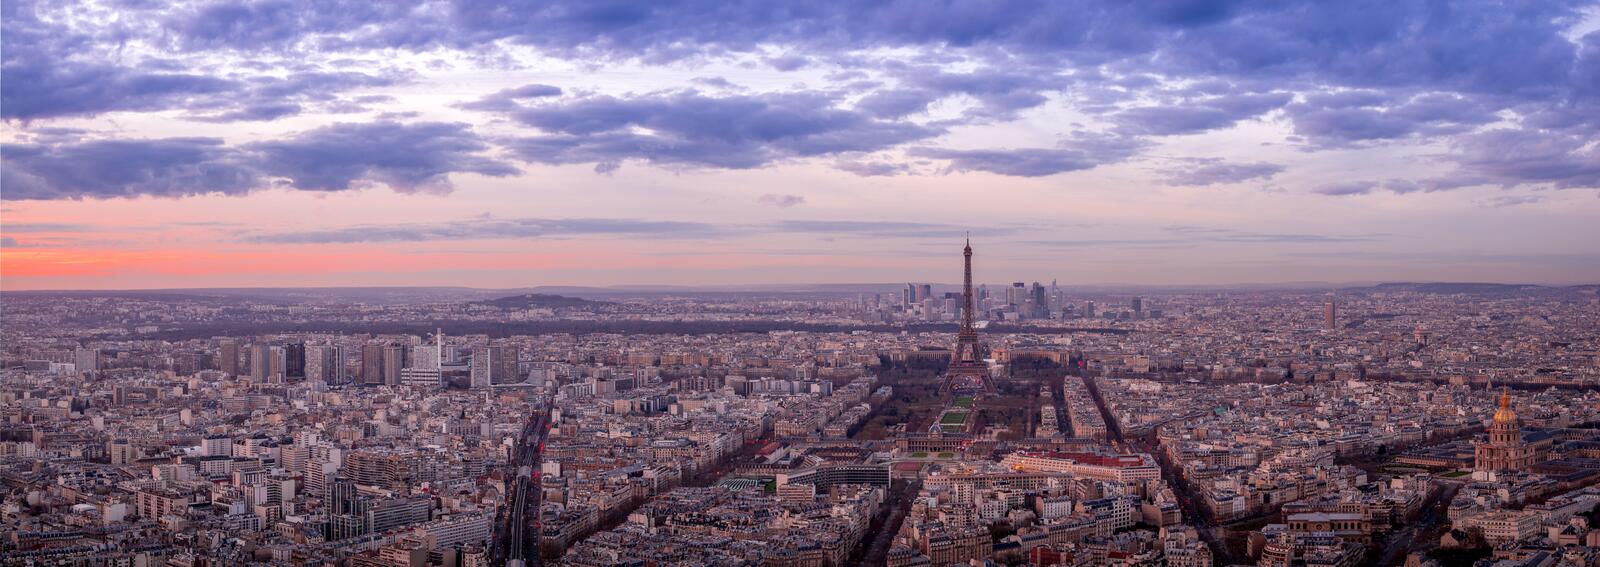 Обои Париж Франция закат панорама на рабочий стол